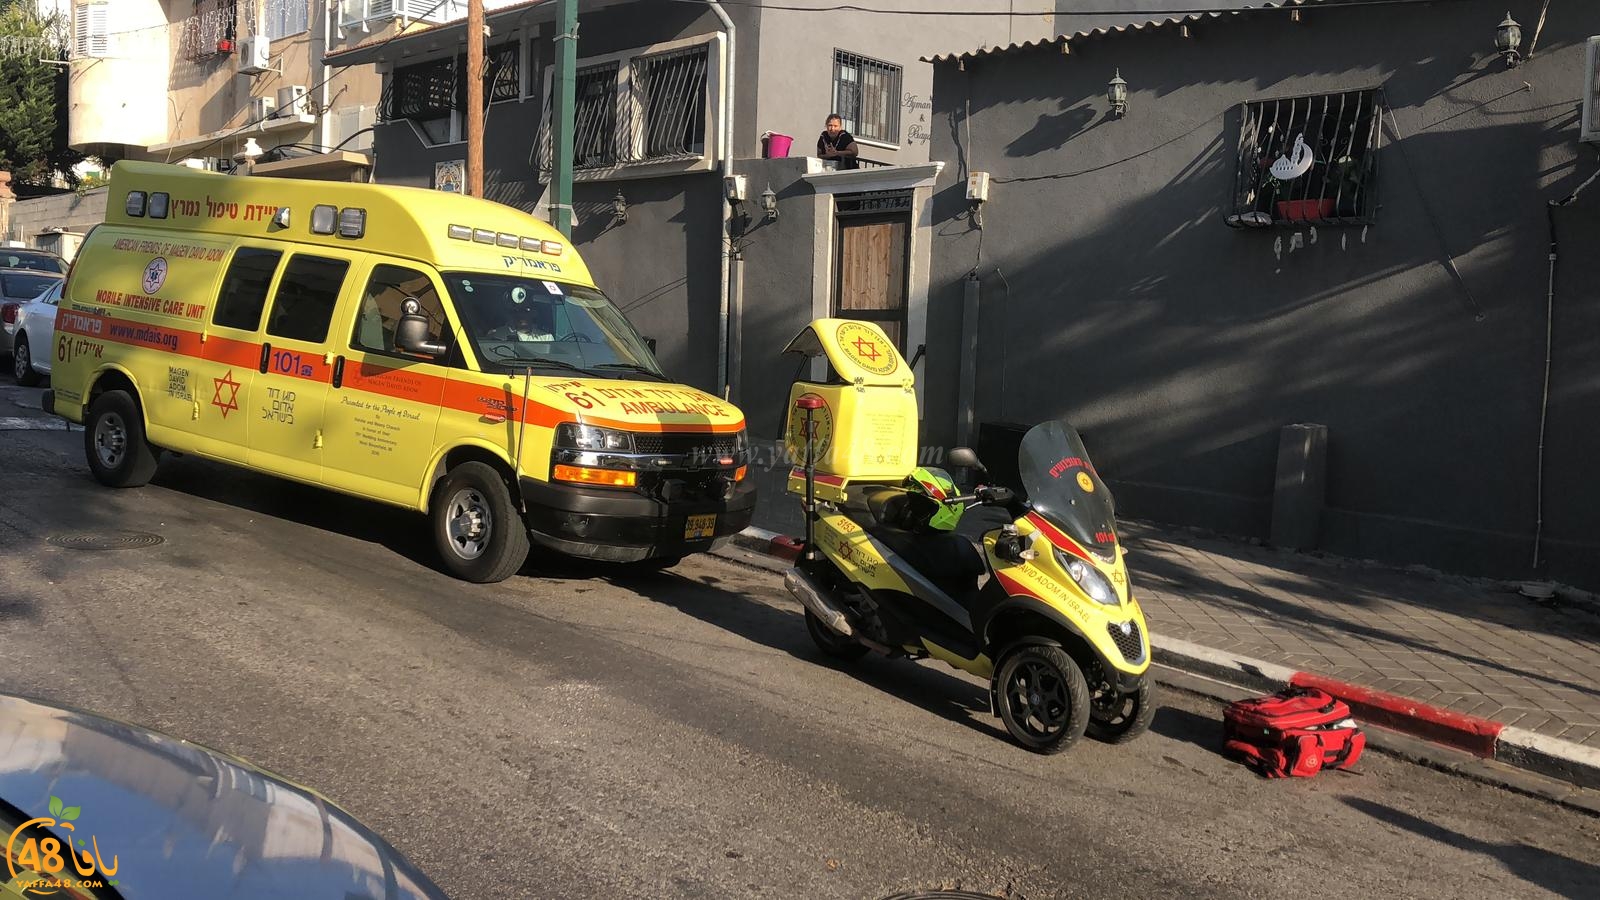  يافا: اصابة متوسطة لطفل سقط عن دراجته الهوائية 